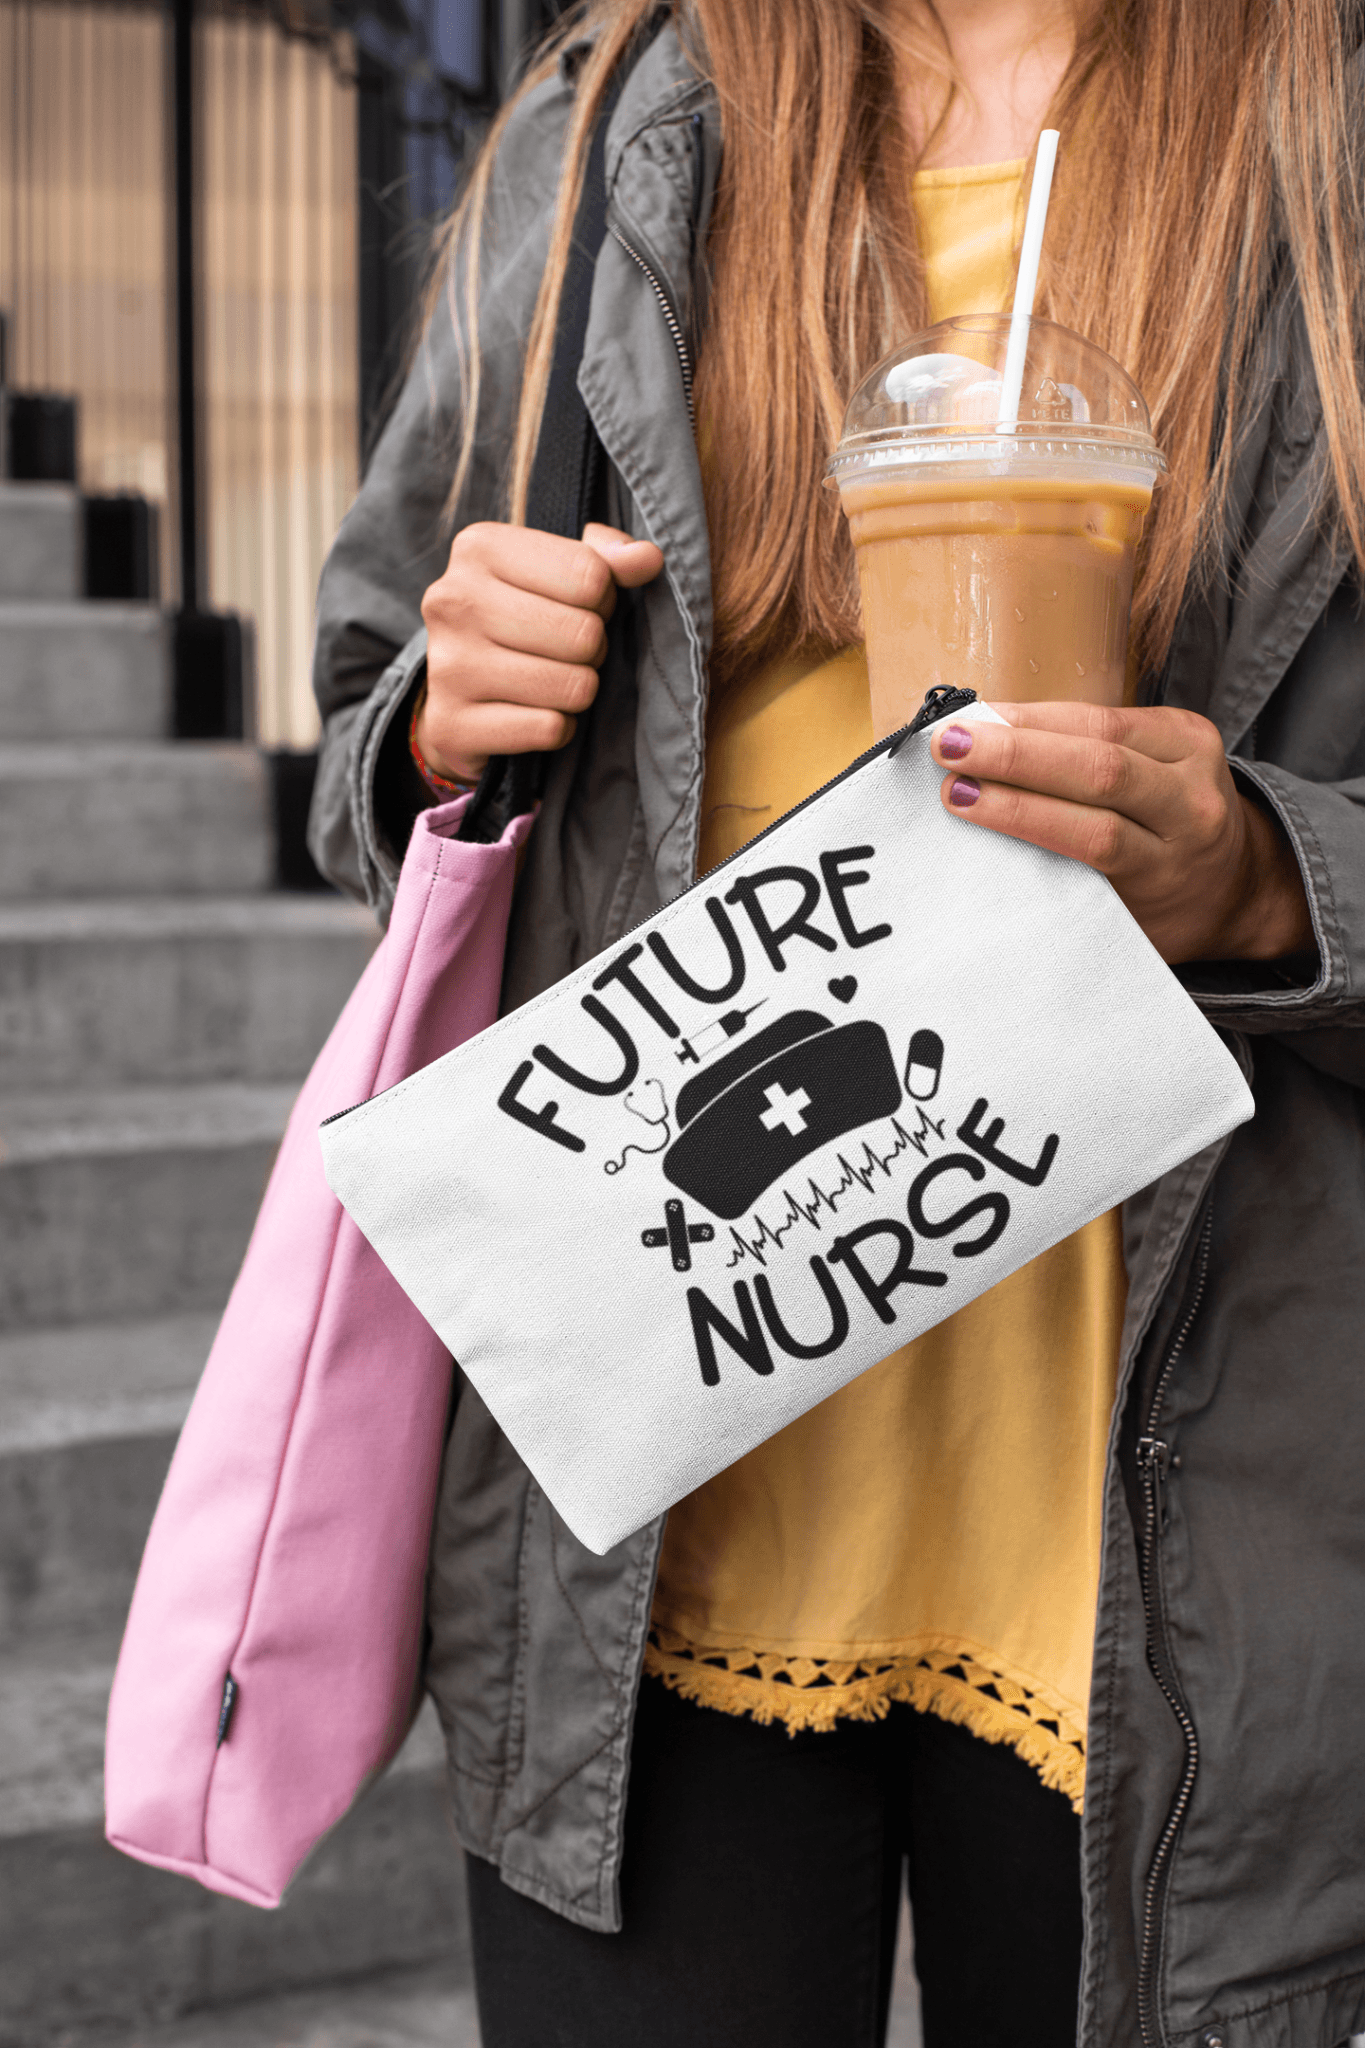 Nursing student favorite flat pouch - Future Nurse - Medical Arts Shop